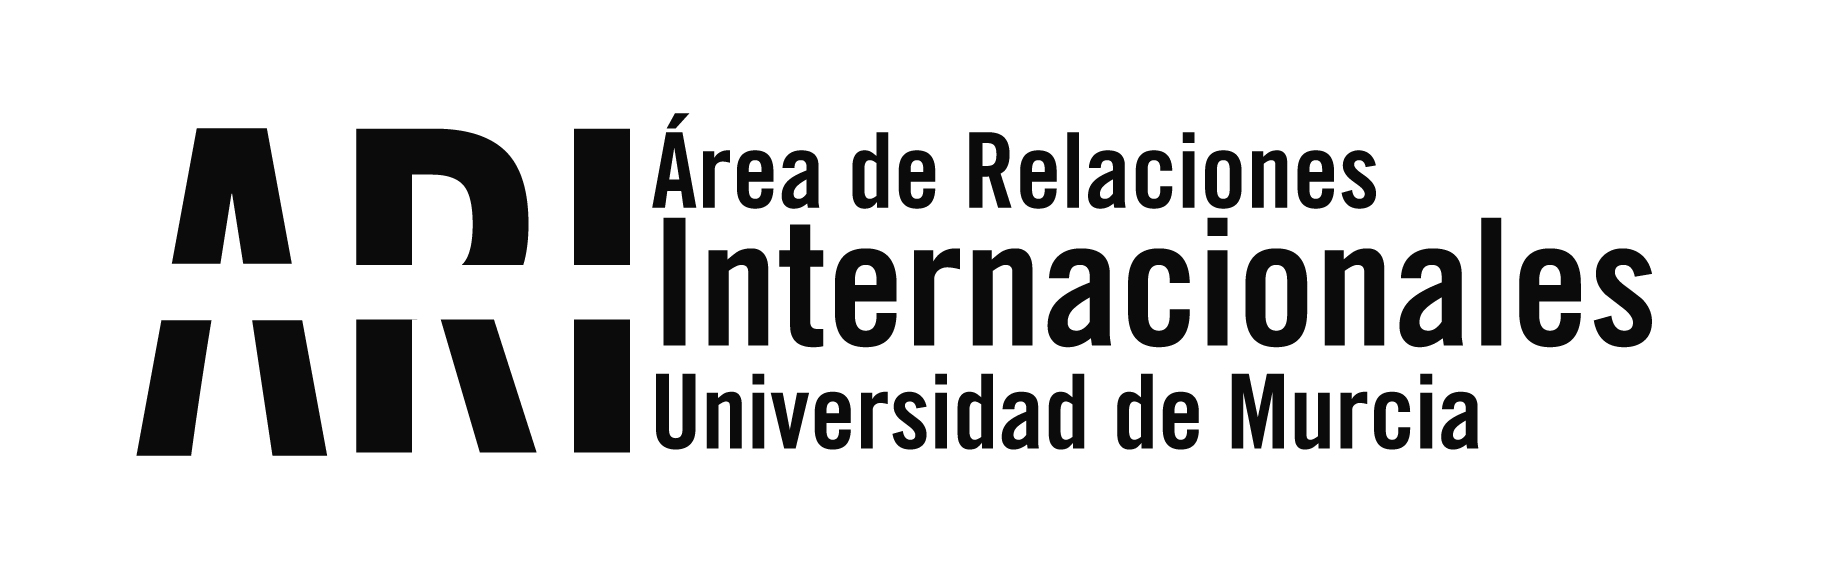 La UMU participa en el VIII Encuentro Entre Universidades Españolas y Norteamericanas APUNE - Área de Relaciones Internacionales